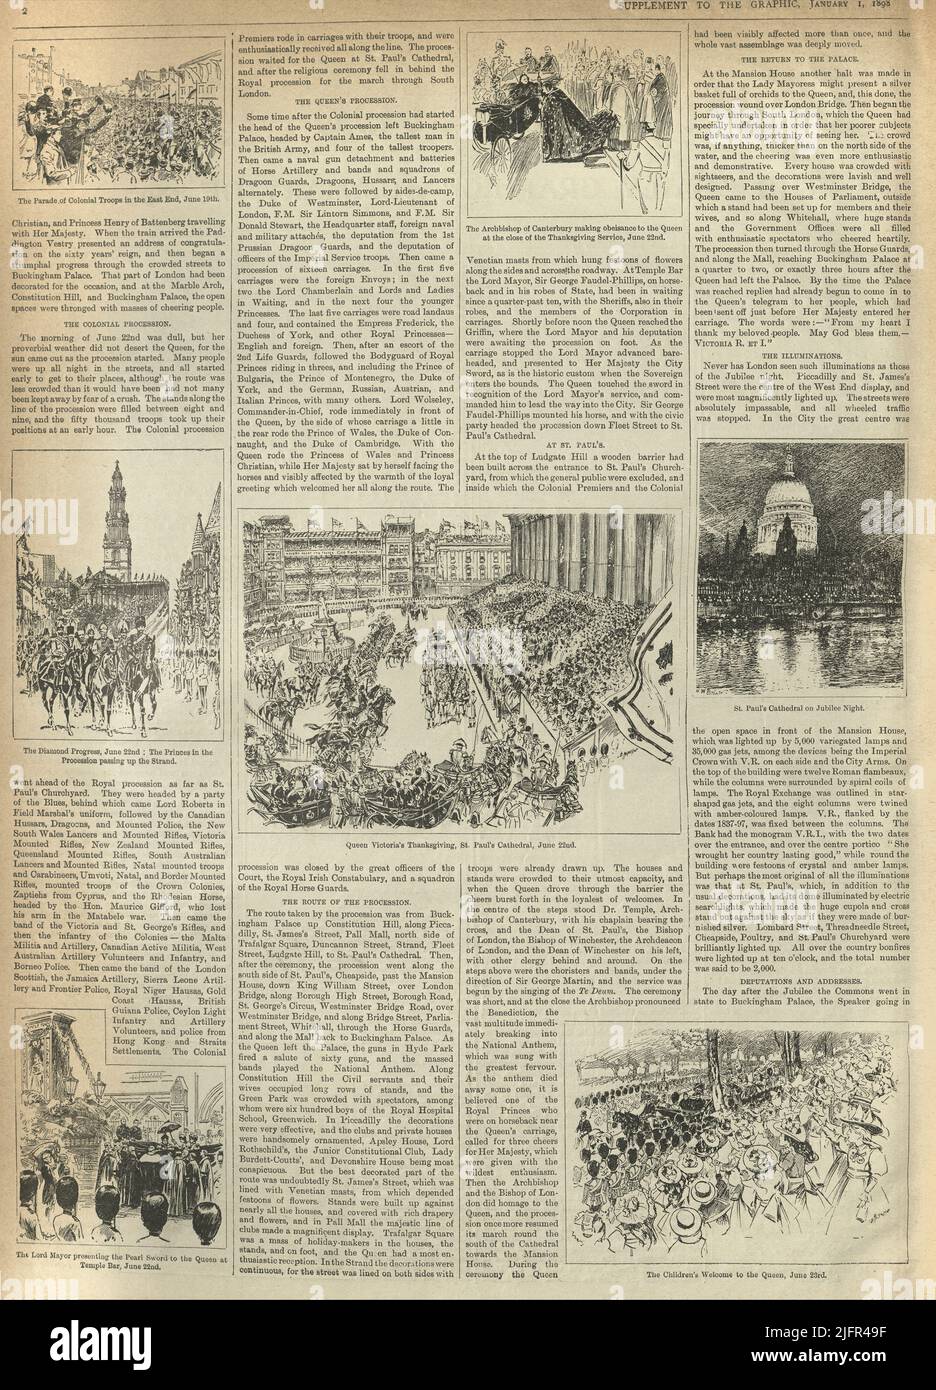 Pagina del giornale vintage, Eventi dell'anno, 1897, dal Daily Graphic Foto Stock